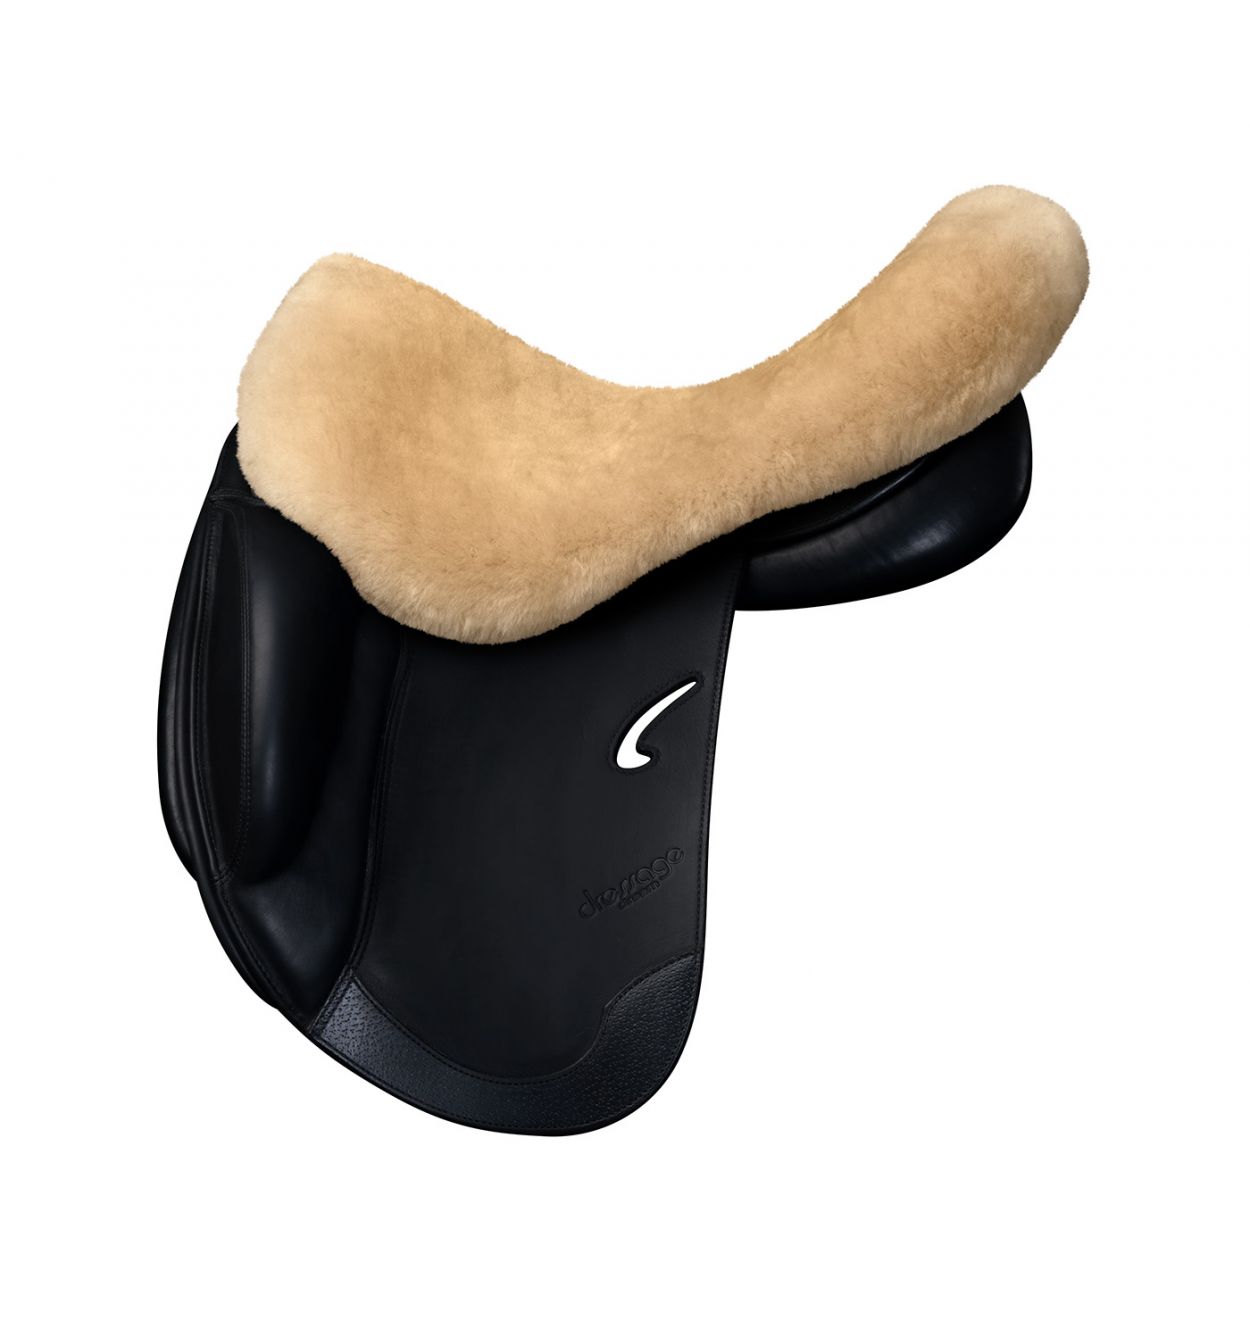 Sheepskin saddle seat saver